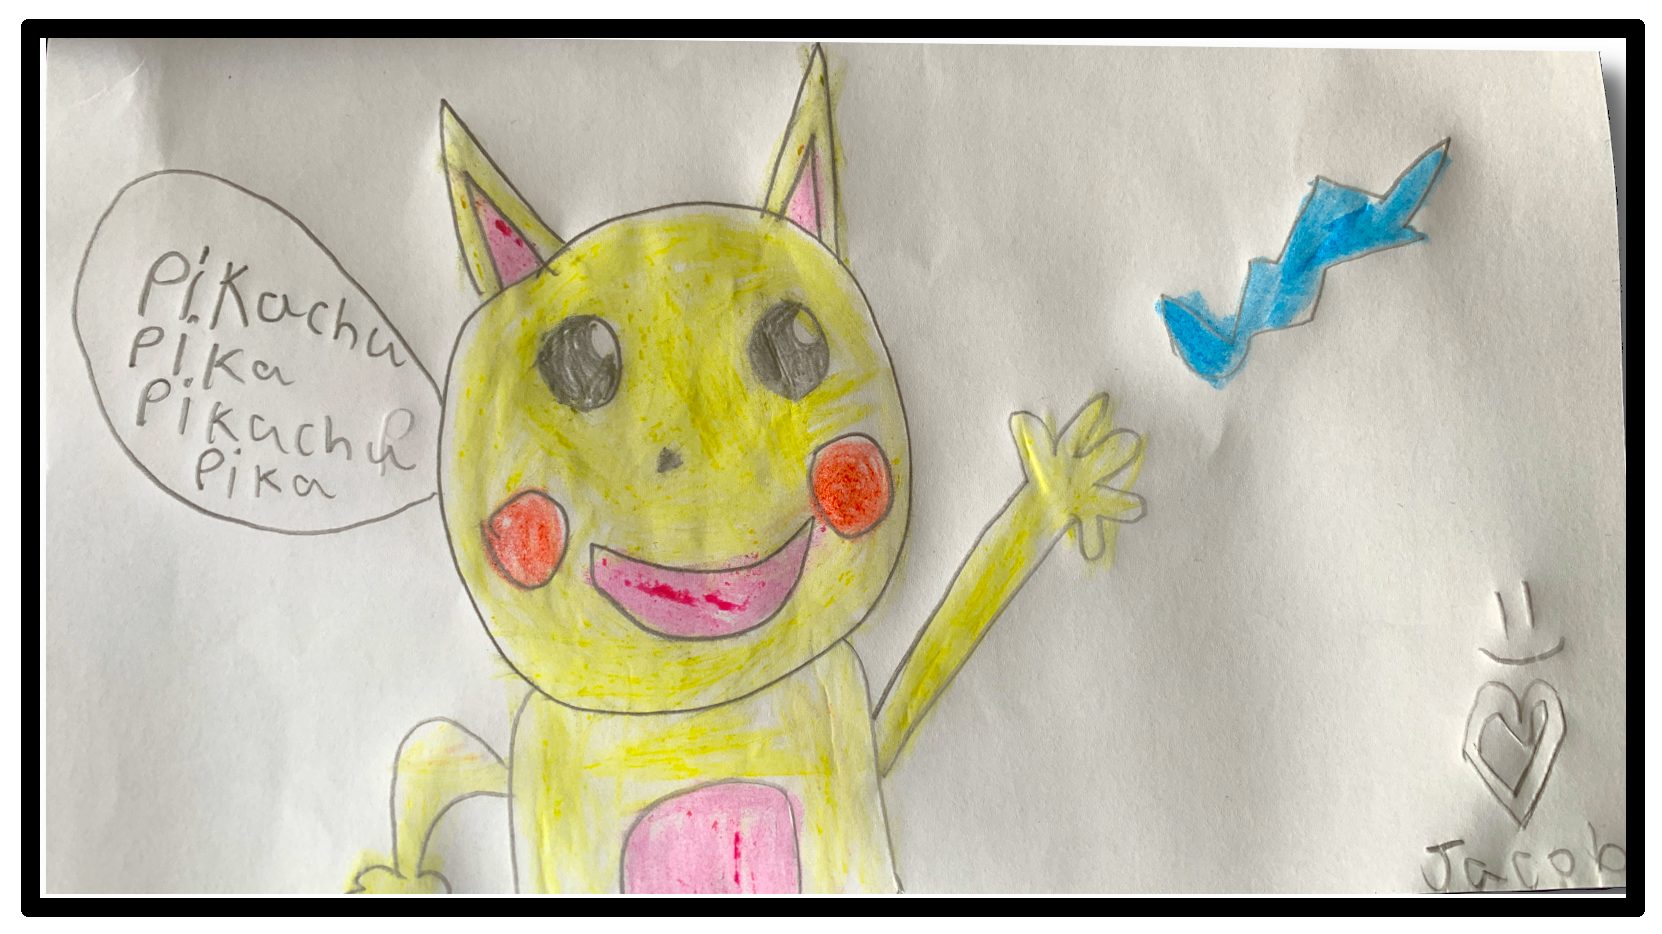 Hướng Dẫn Chi Tiết Cách Vẽ Pikachu Đơn Giản Với 7 Bước Cơ Bản